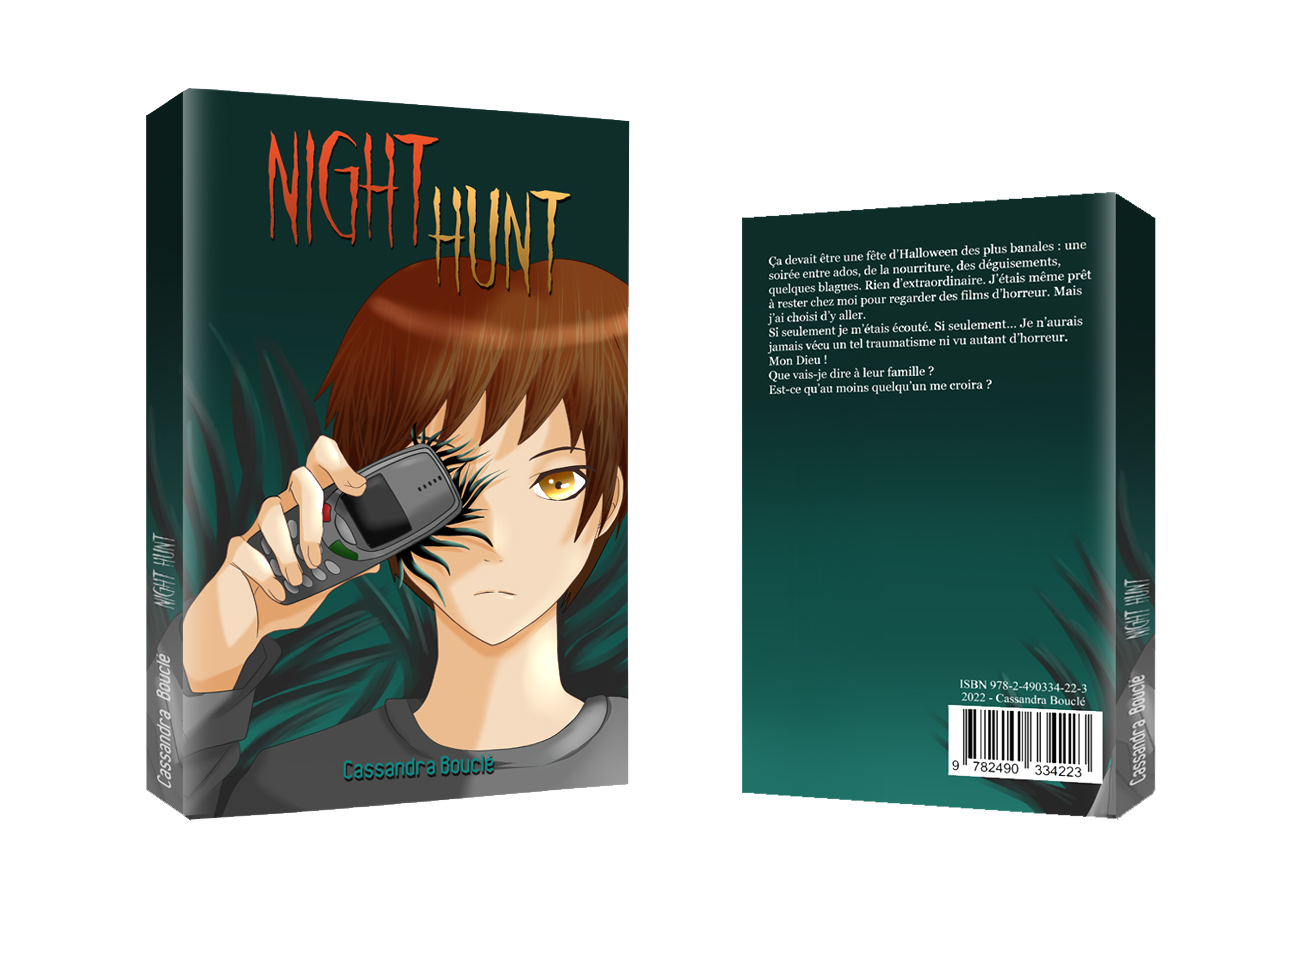 Light Novel, drame, horreur, monstre, roman, édition, auto-edition, auteur, halloween, LN, héros, groupe, adolescent, night hunt, illustration,